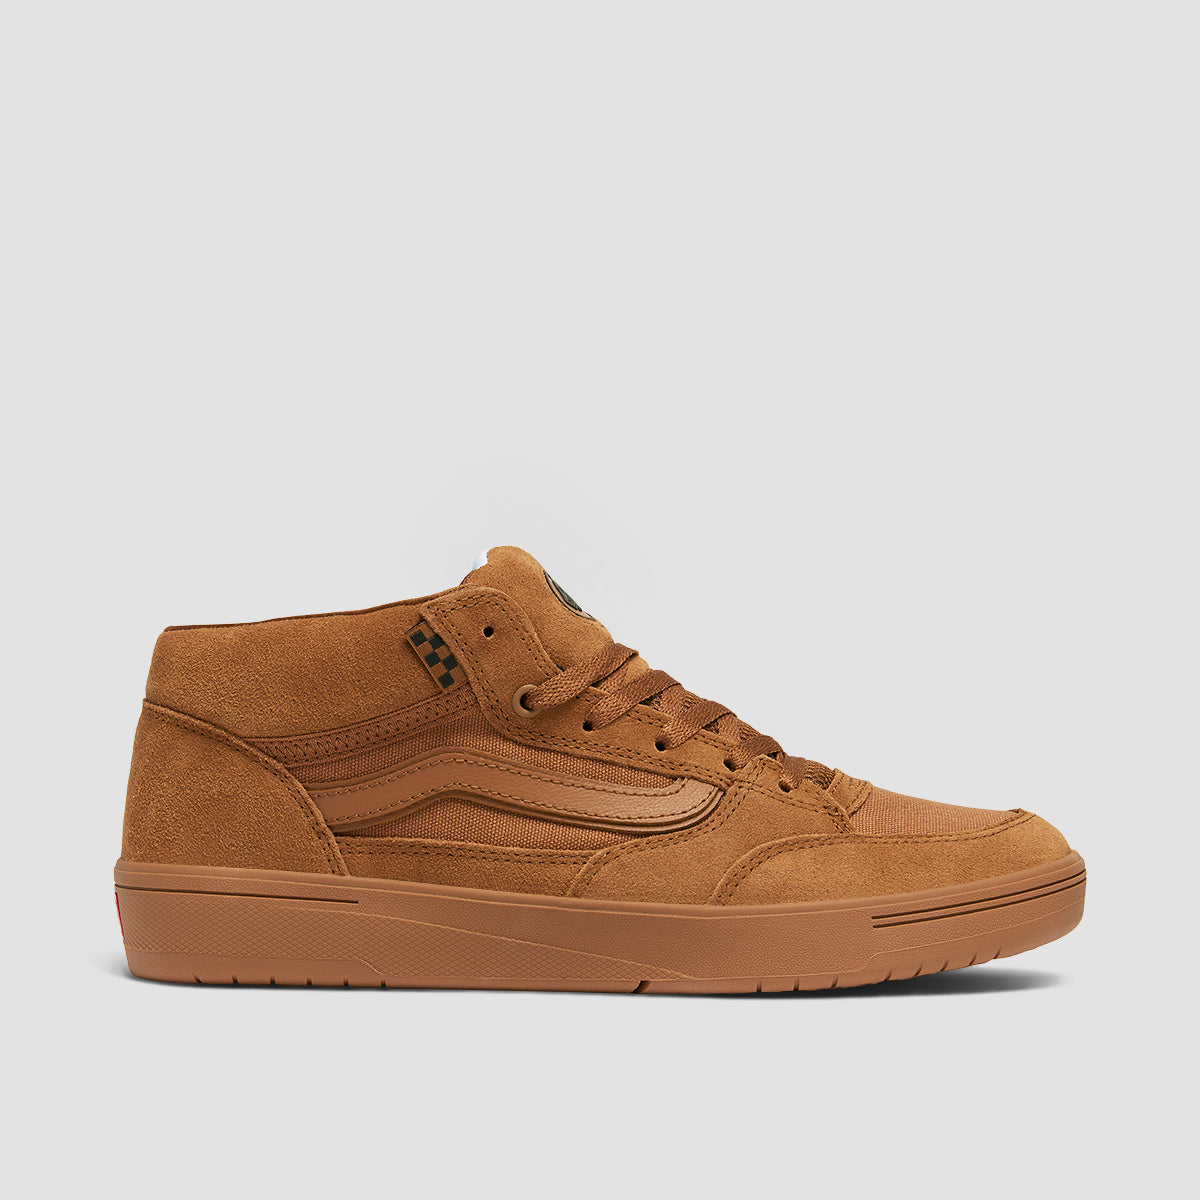 Vans Skate Zahba Mid Top Shoes - Brown/Gum